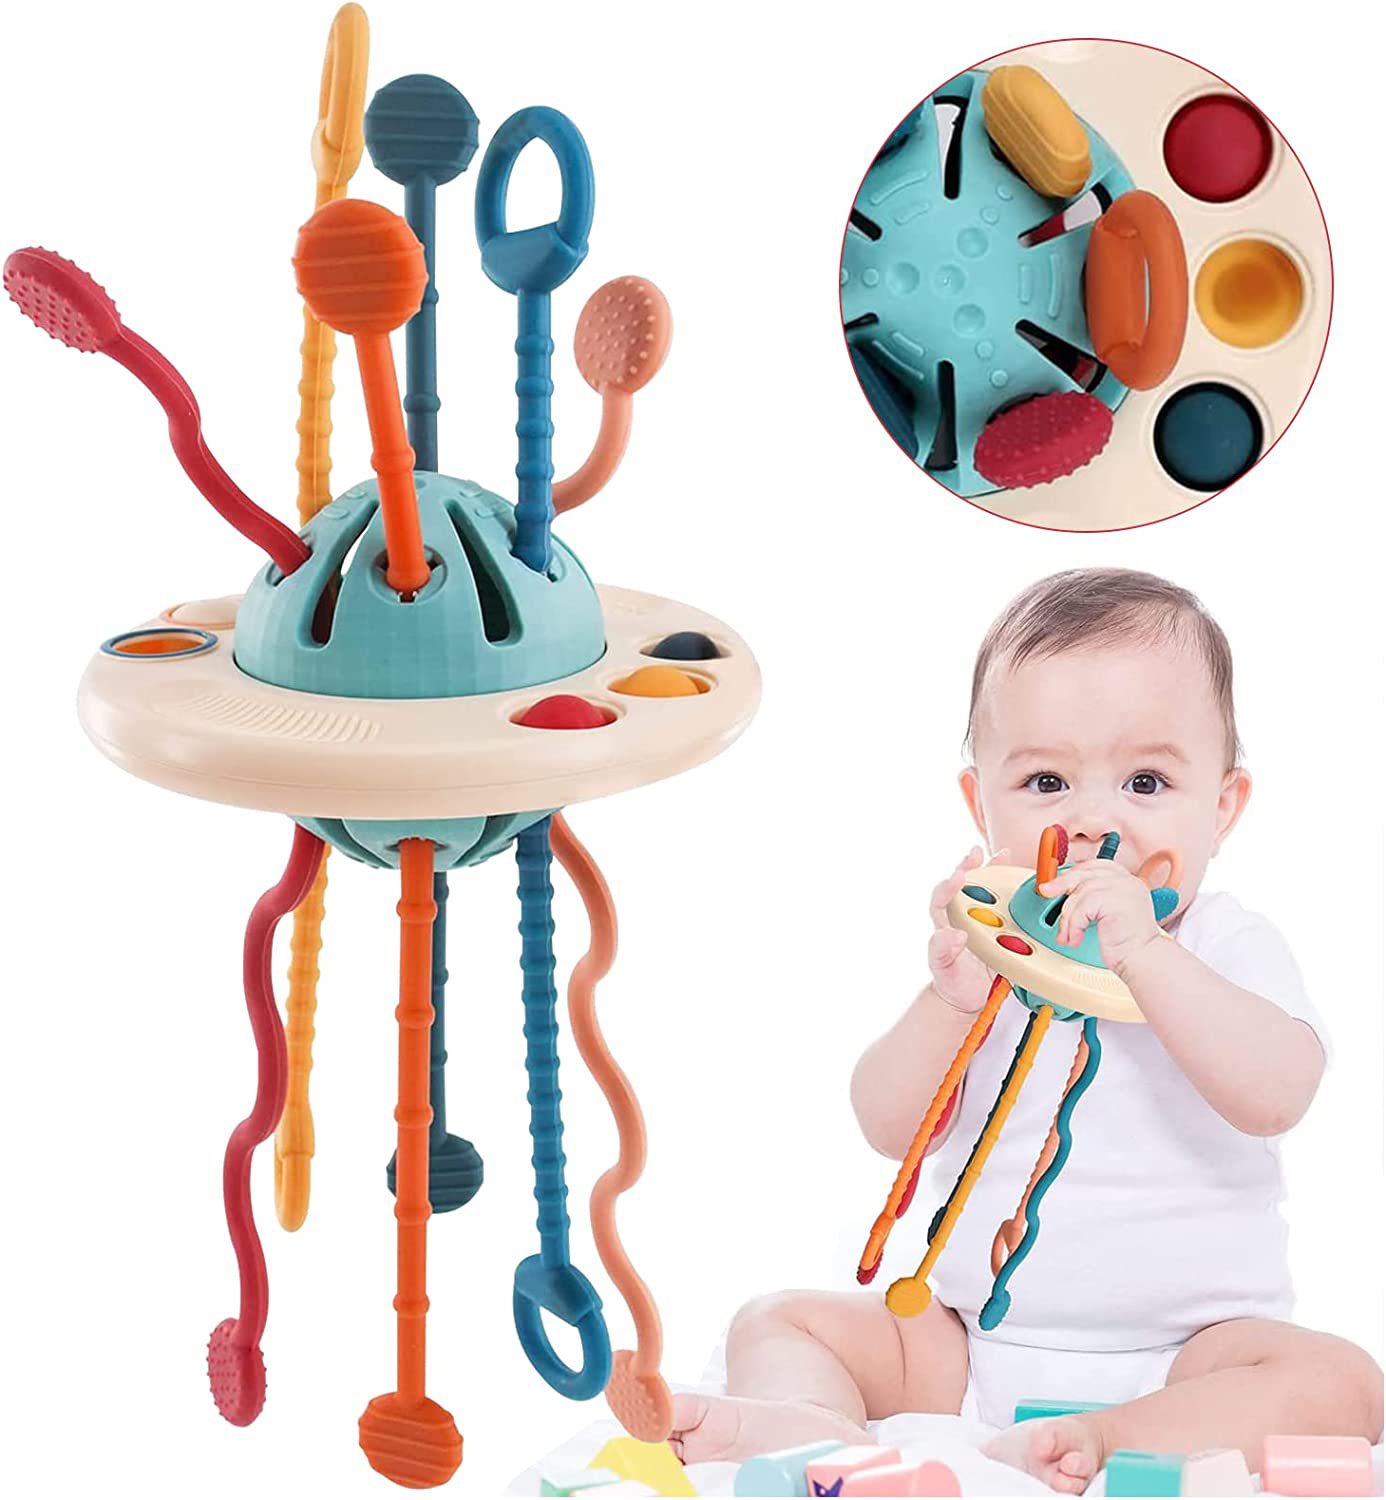 Sensory Baby Montessori Silicone Toy Travel dọkpụrụ ihe egwuregwu ụmụaka maka ụmụaka